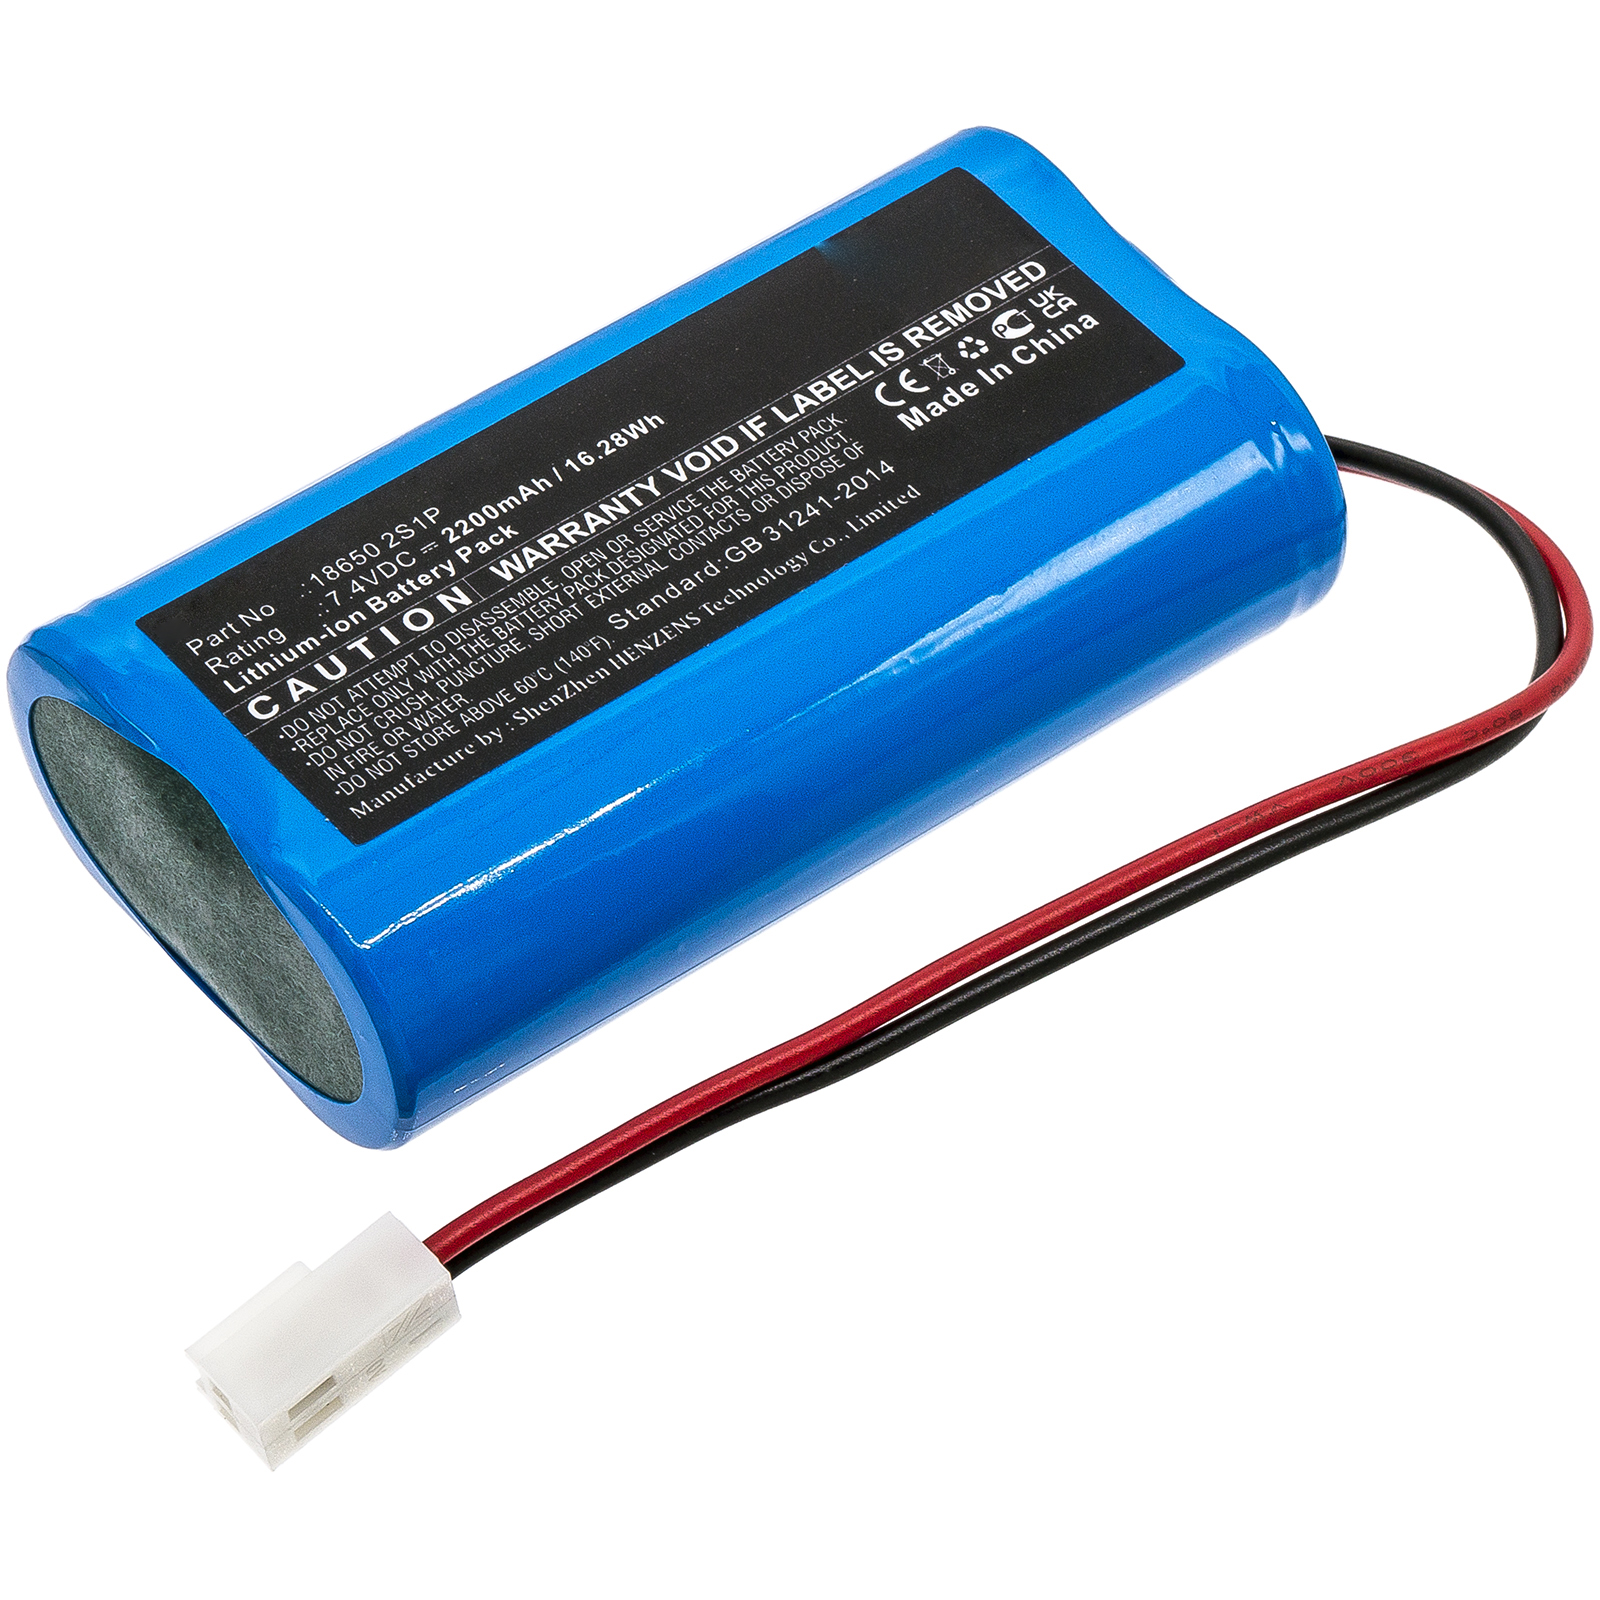 Batteries for NeptoluxEmergency Lighting